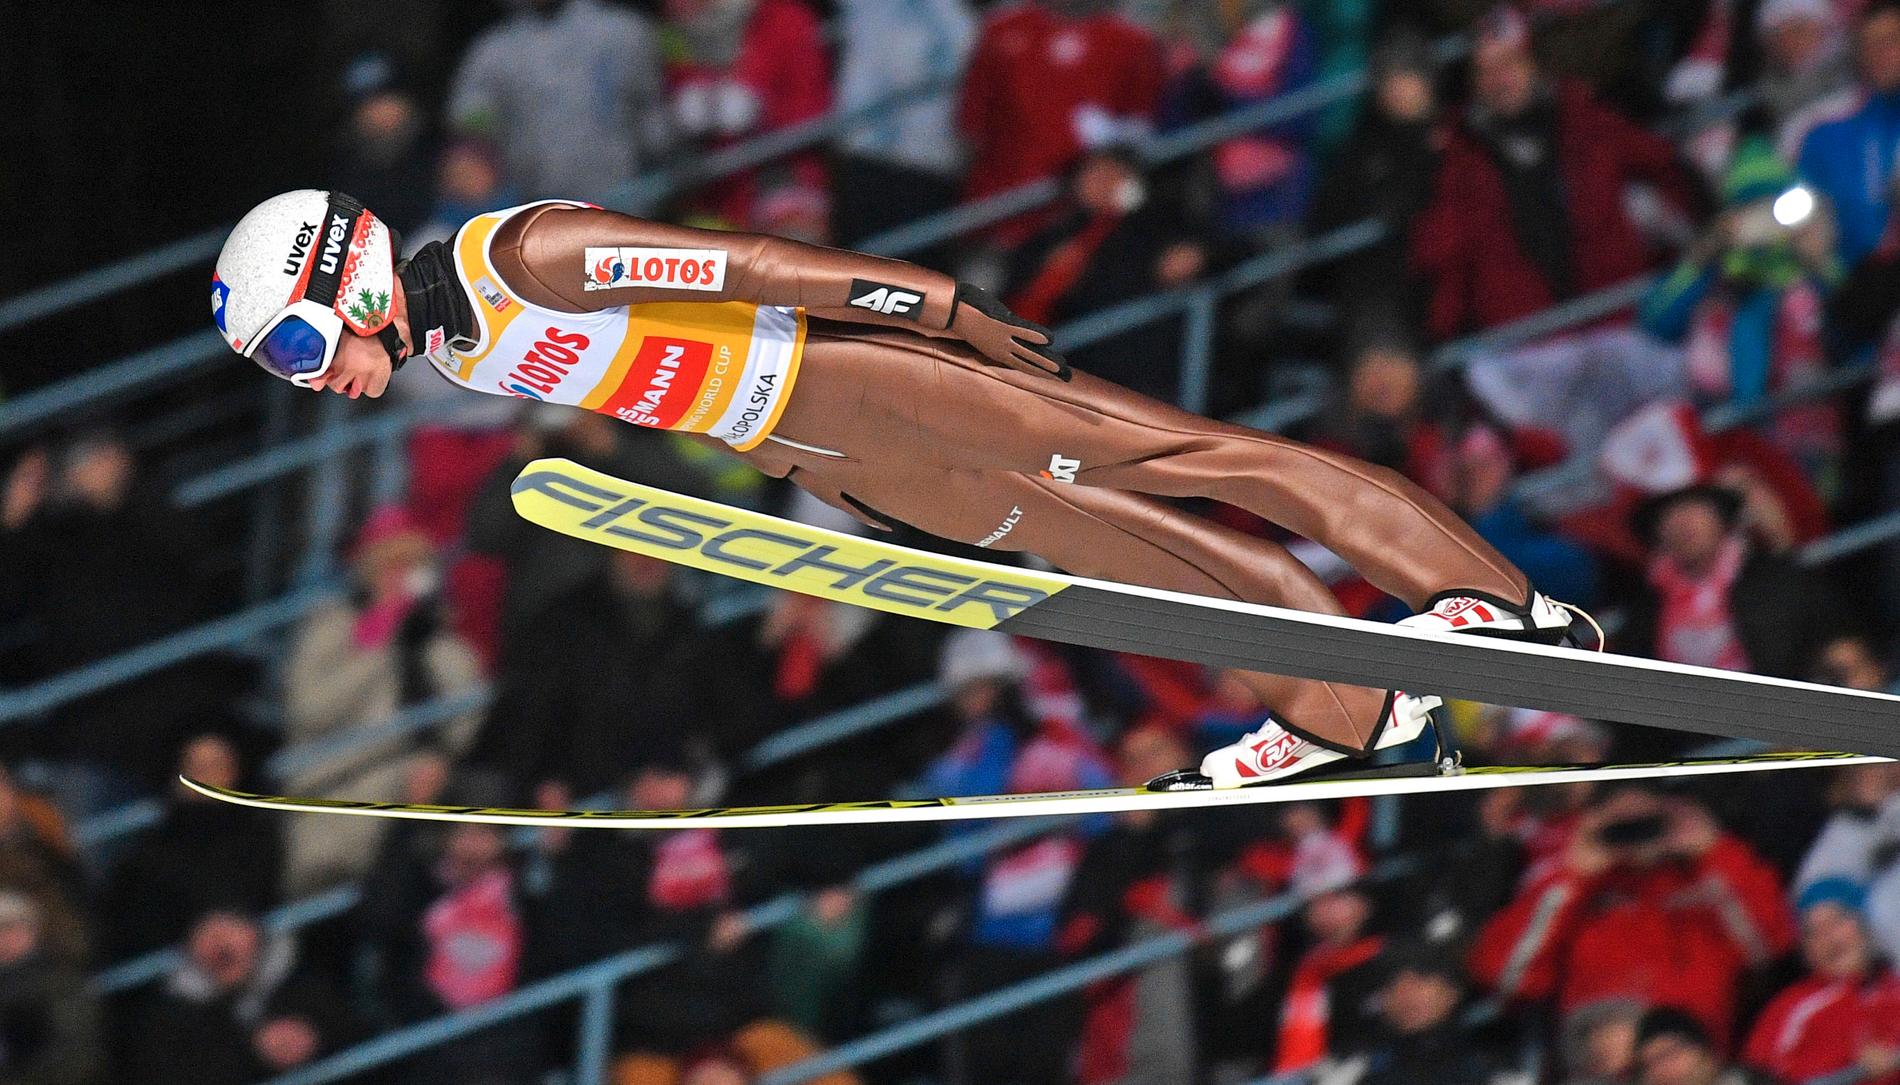 Världscupen i skidor: Backhoppning – sänds på SVT1 kl 14.00. I fjol vann den polske stjärnan Kamil Stoch tävlingen, som har avgjorts i den sydtyska Garmisch-Partenkirchen sedan1921.